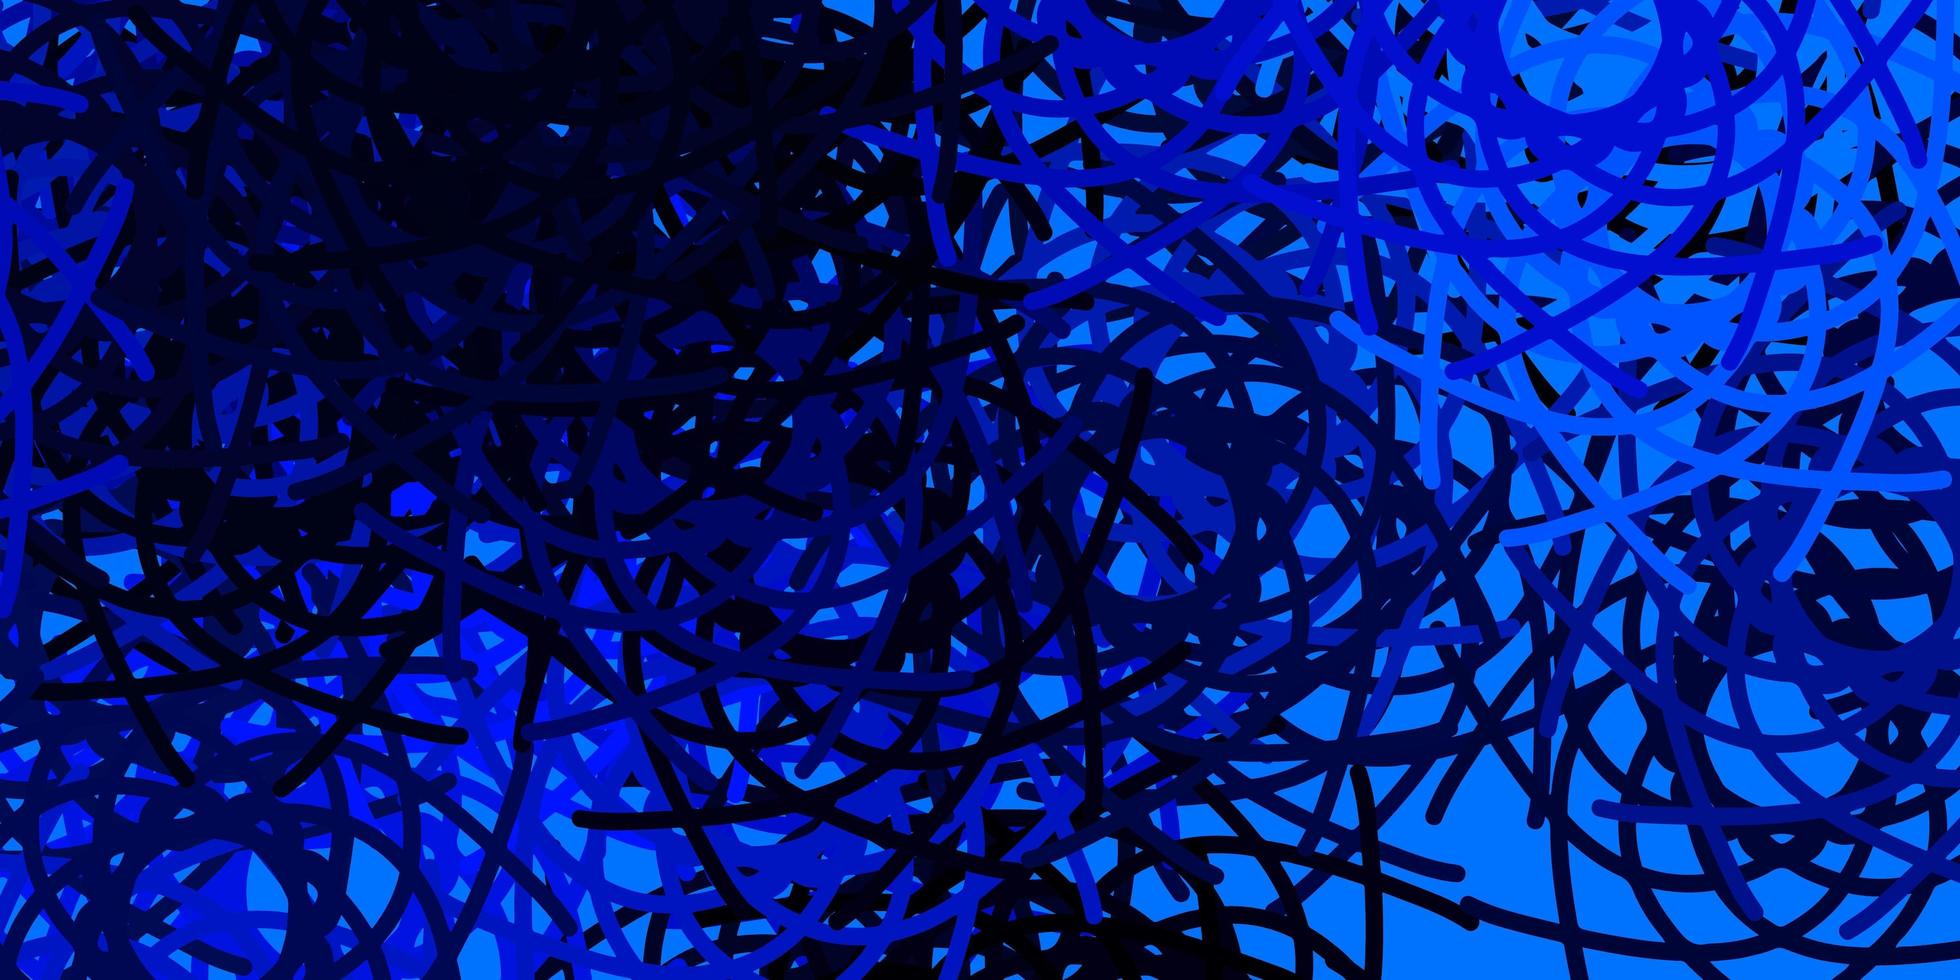 textura vector azul claro com formas de memphis.